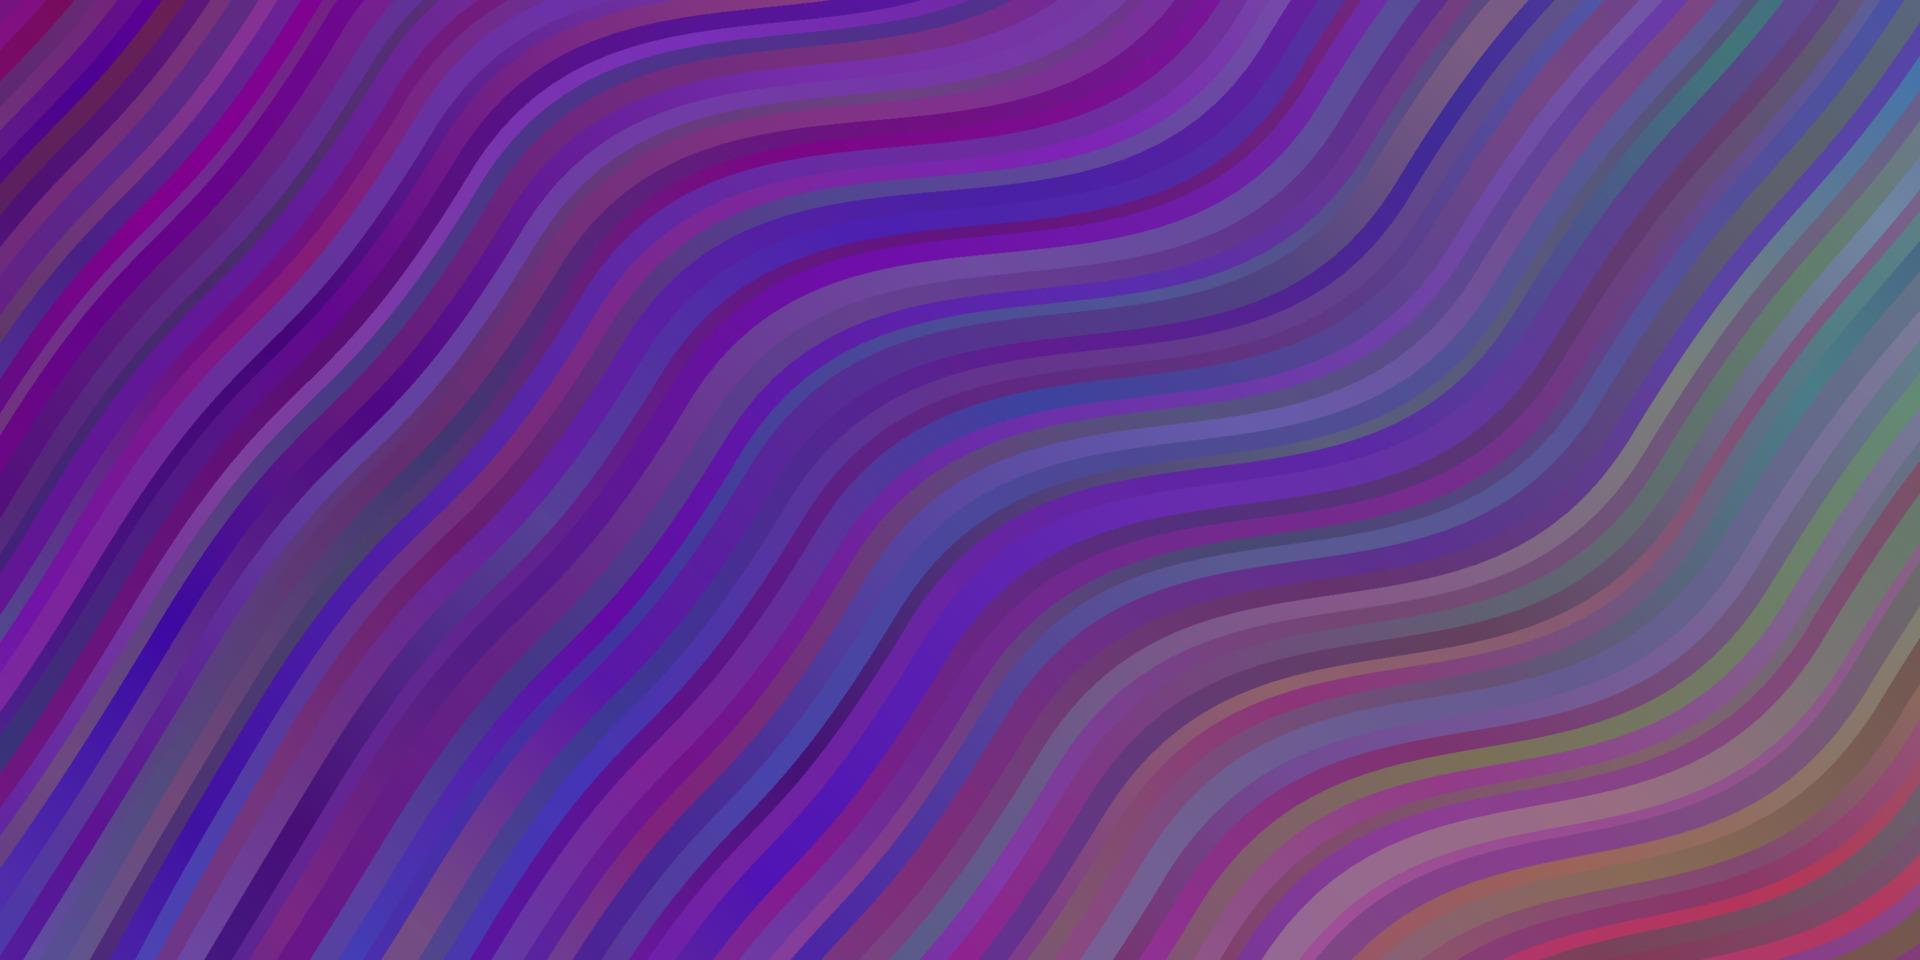 luz de fundo vector multicolor com linhas curvas.